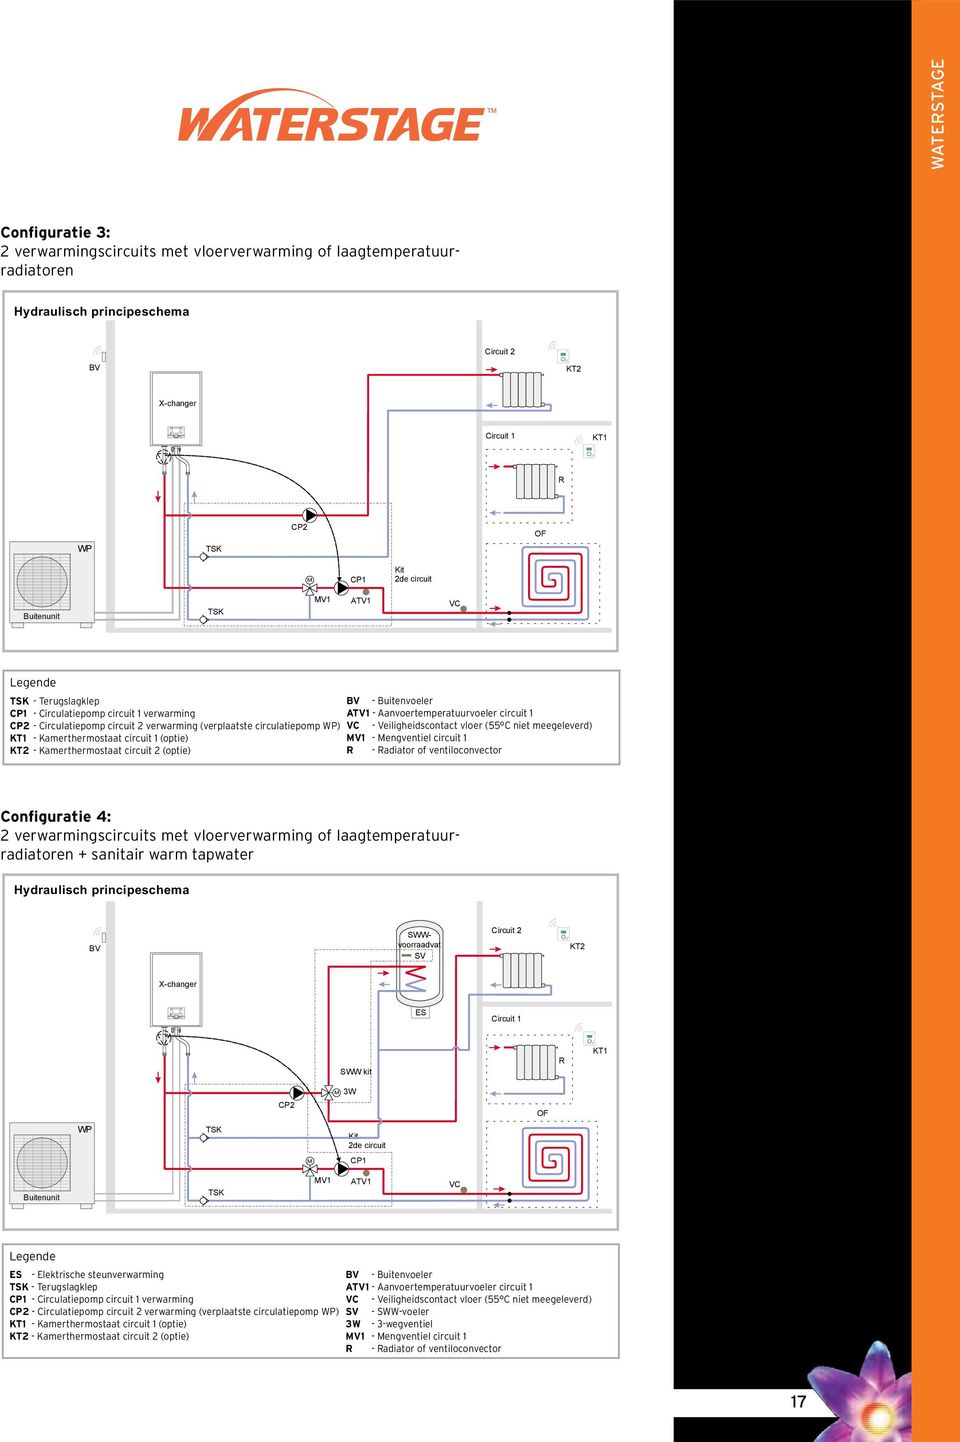 circuit 1 (optie) V1 - engventiel circuit 1 KT2 - Kamerthermostaat circuit 2 (optie) - adiator of ventiloconvector Configuratie 4: 2 verwarmingscircuits met vloerverwarming of